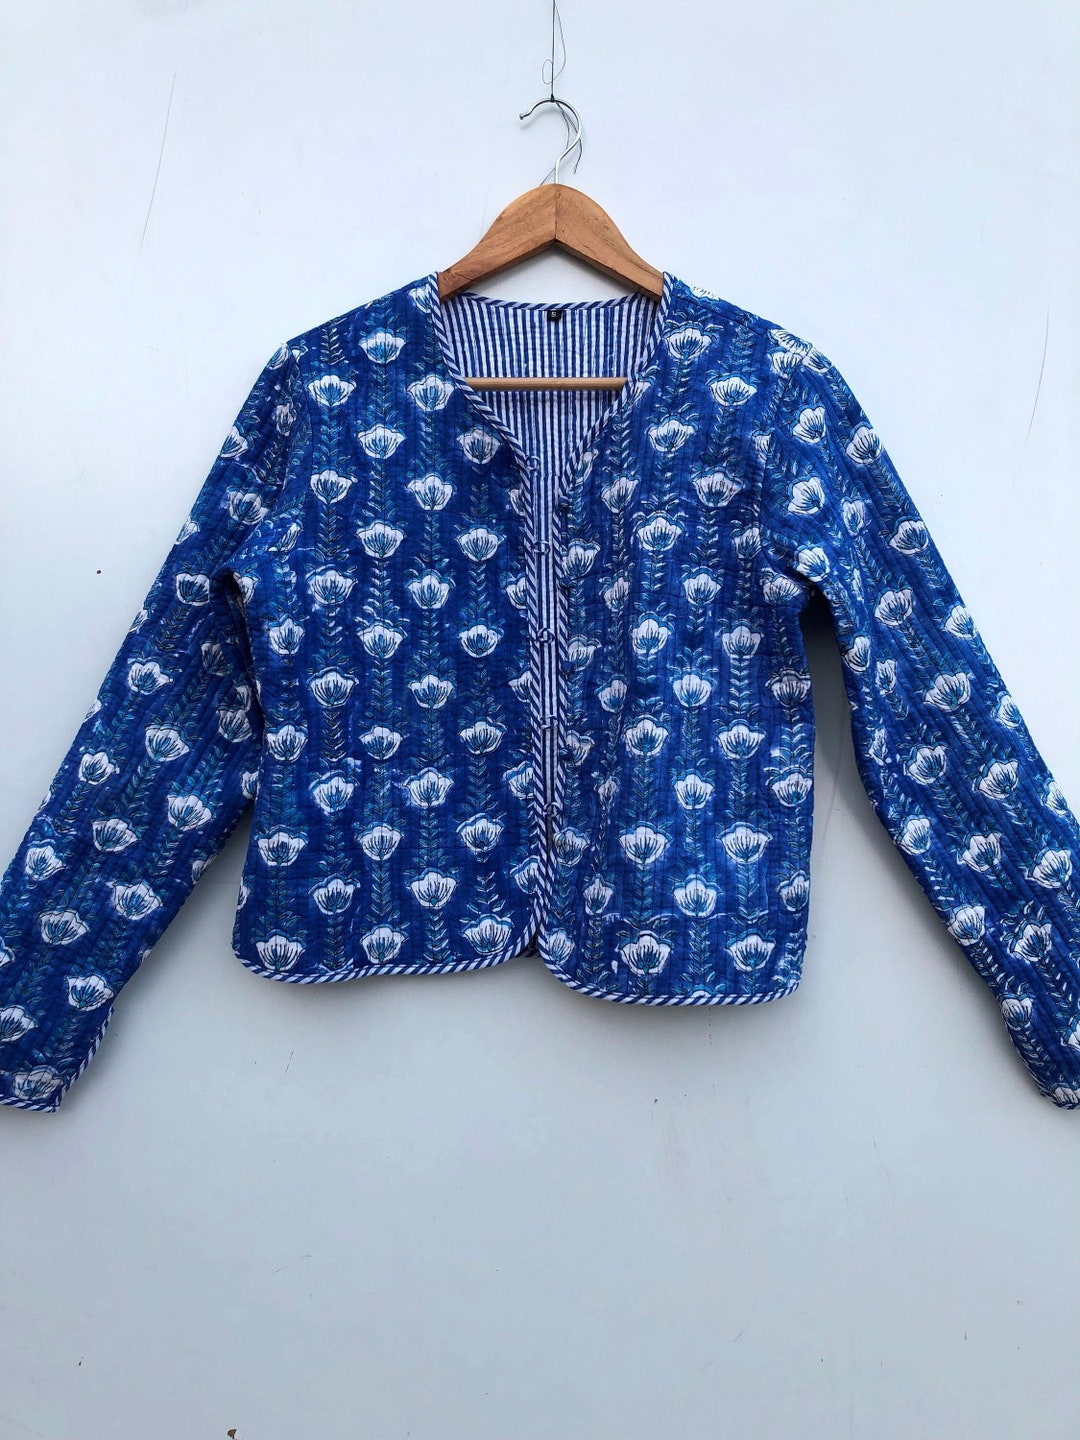 Reversible Jacket Kantha Jacket Indian Handmade Cotton Jacket Blue ...